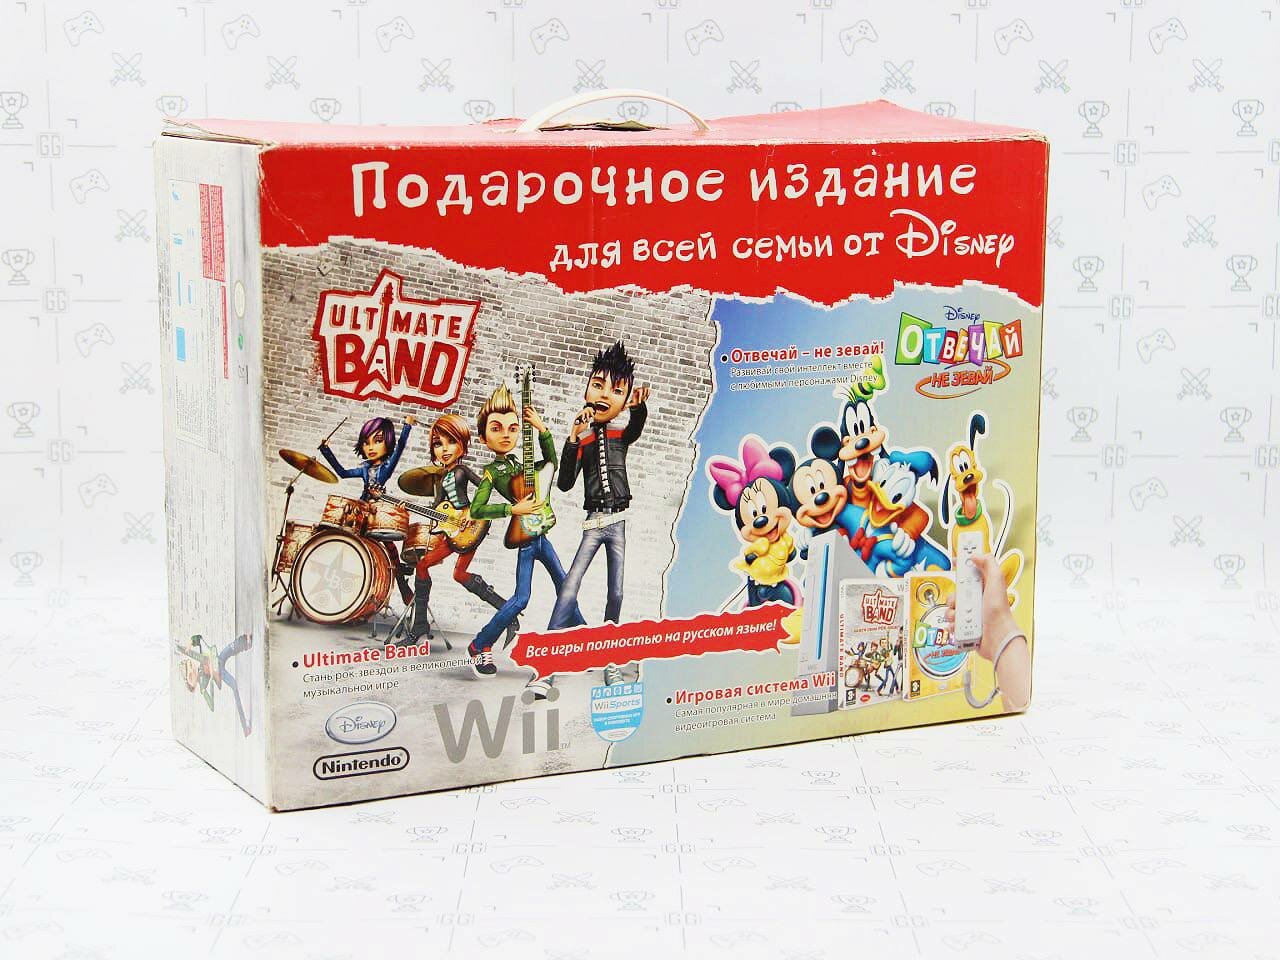 Игровая приставка Nintendo Wii [ RVL- 001 EUR ] White В коробке Б/У Подарочное издание от Disney